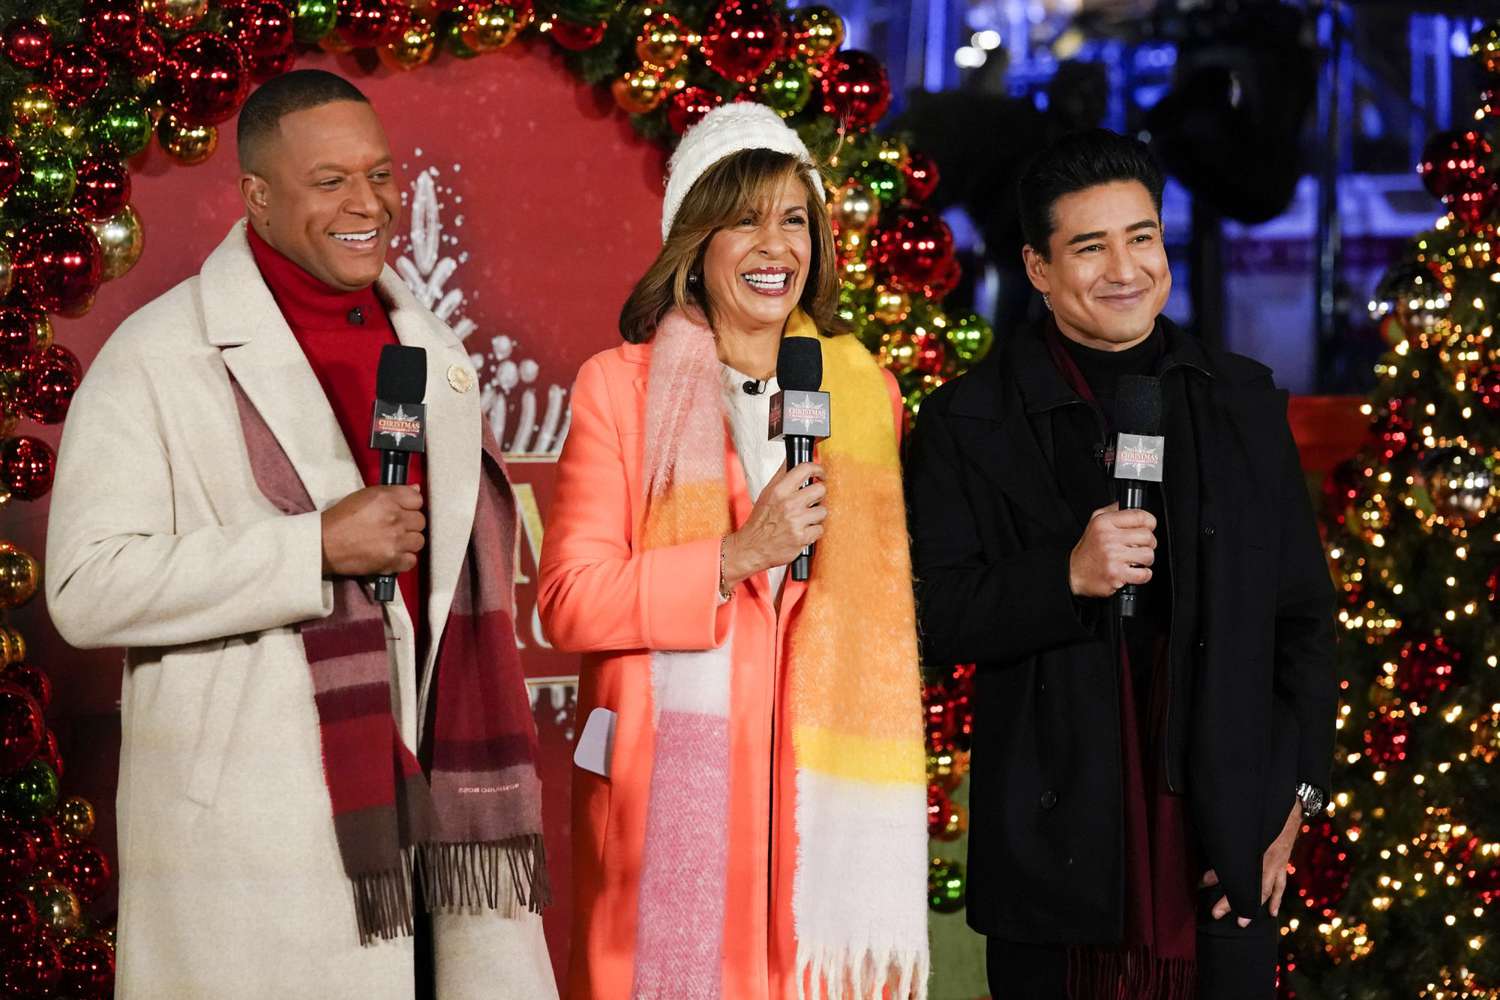 <p>En Nueva York captamos al actor y conductor mexicoamericano (der.) y a los conductores de NBC encabezando le ceremonia anual del encendido del árbol de navidad de Rockefeller Center.</p>
                            